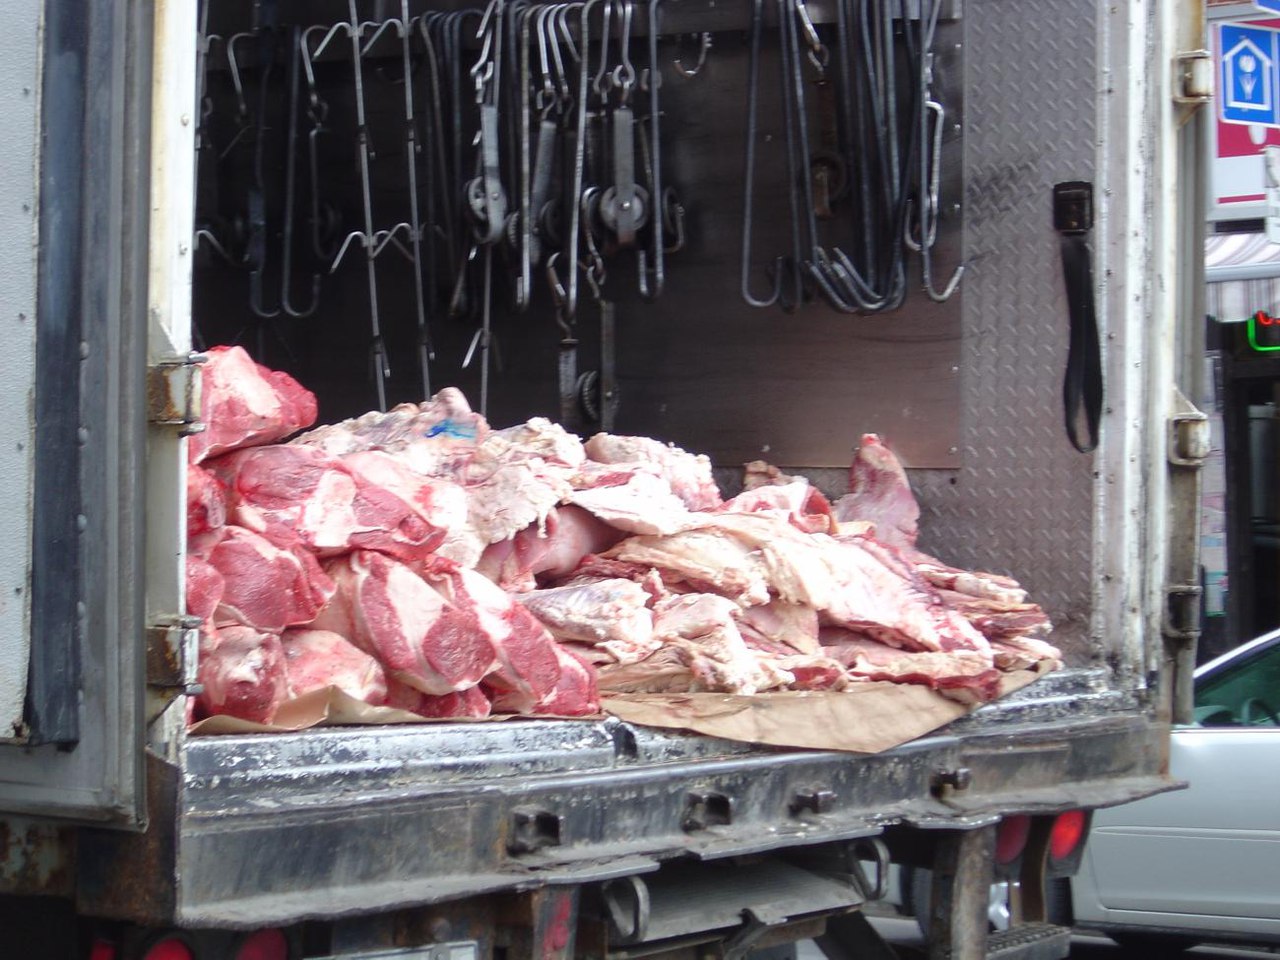 Сотрудники Березовского ОГАИ задержали водителя, незаконно перевозившего крупную партию мяса